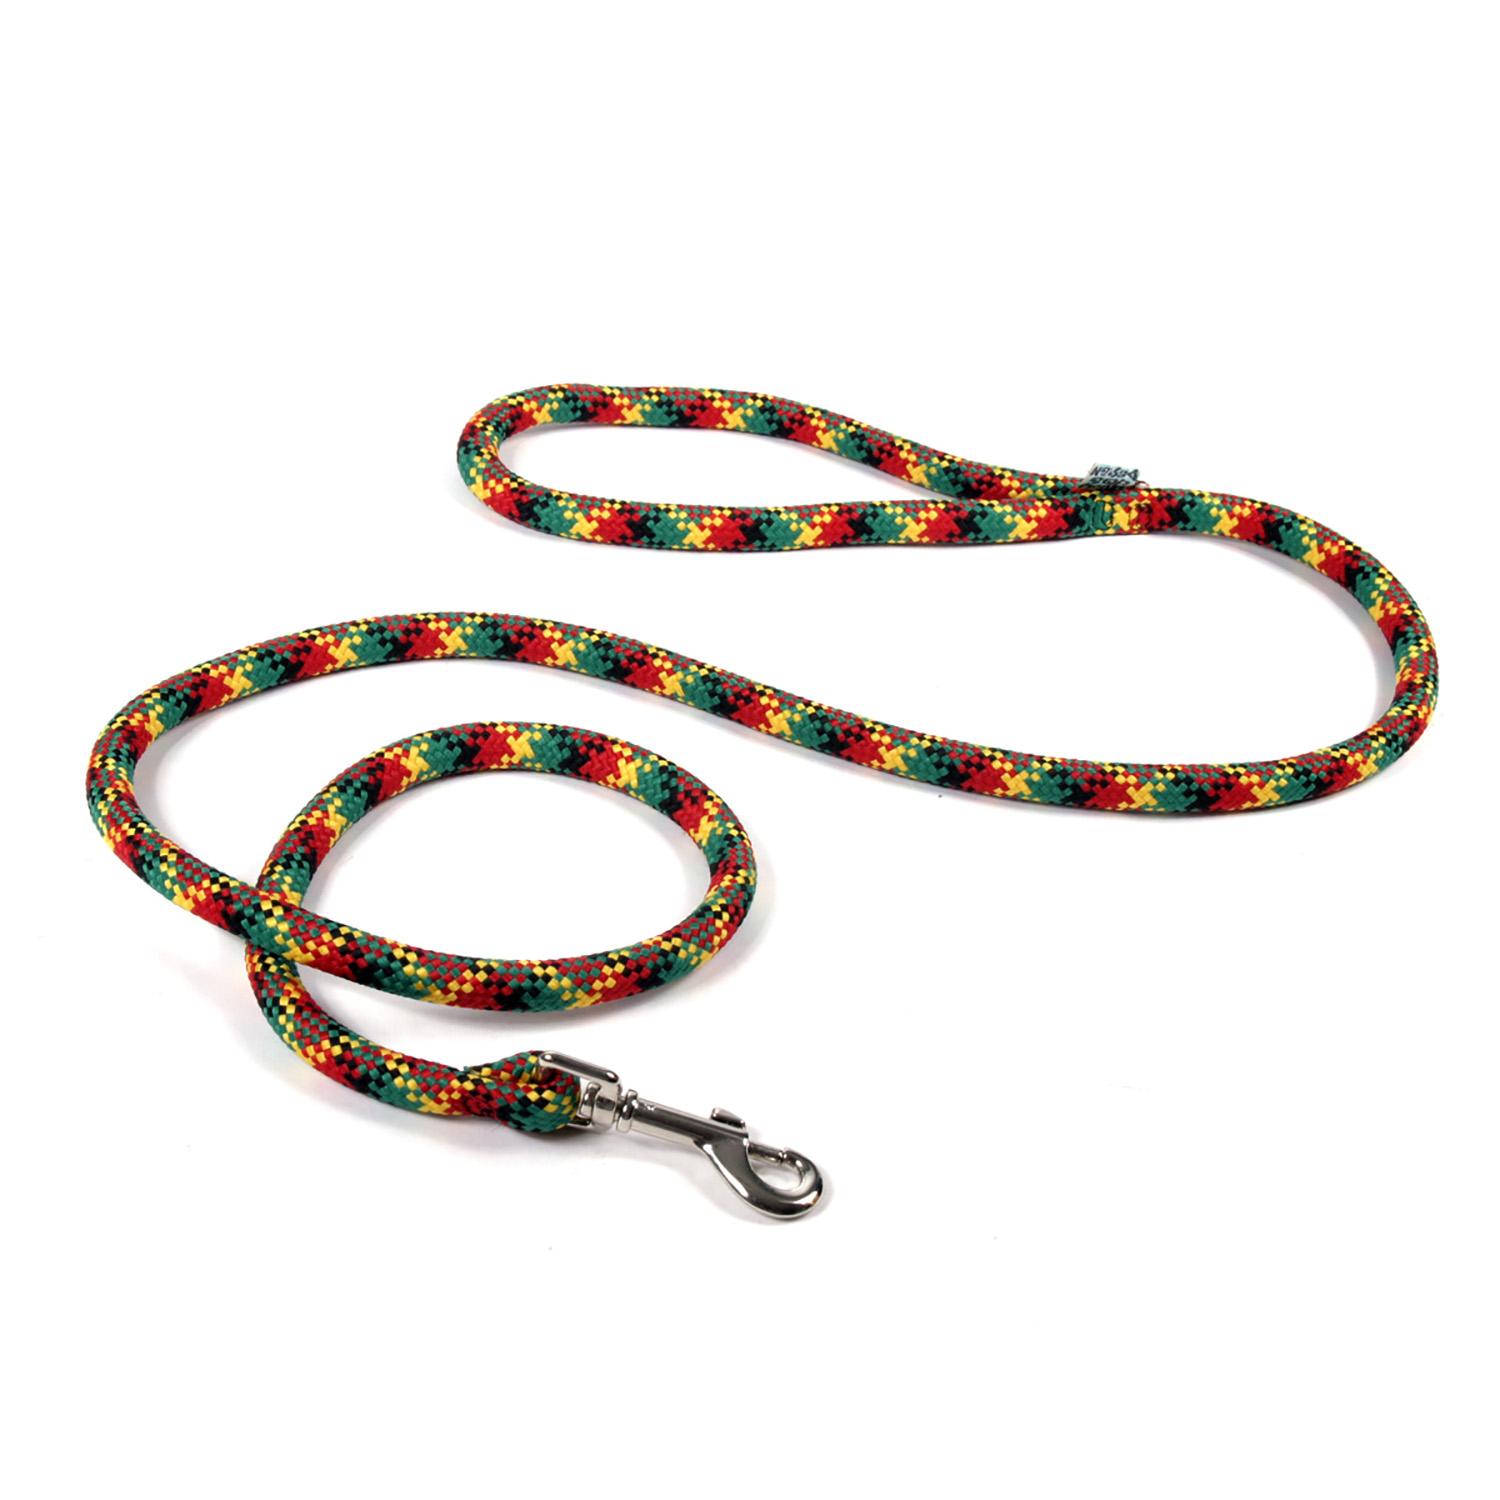 Round Braided Multicolor Dog Leash by Yellow Dog - Rasta